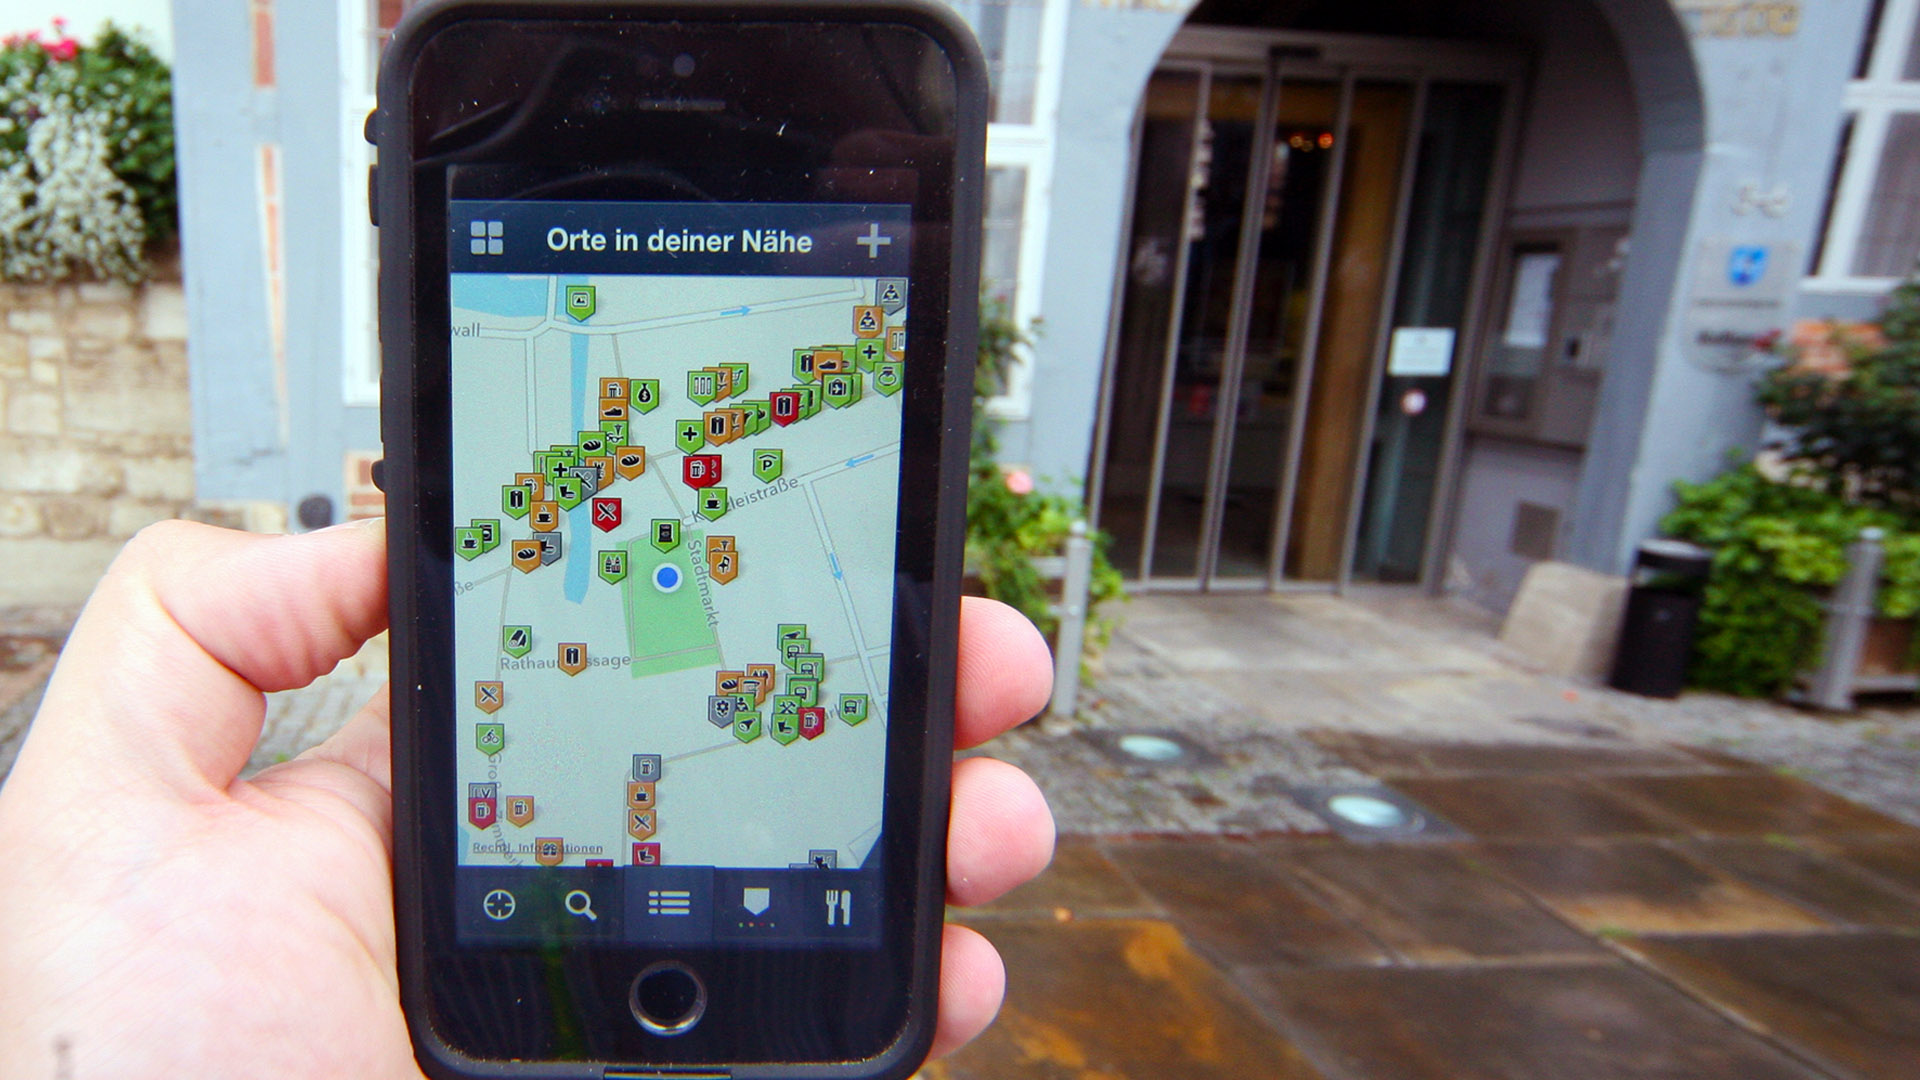 Wo ist Wolfenbüttel barrierefrei? In der Wheelmap-App kann dies auf dem Smartphone vor Ort markiert werden. Das Wolfenbütteler Rathaus hat eine grüne Markierung erhalten.